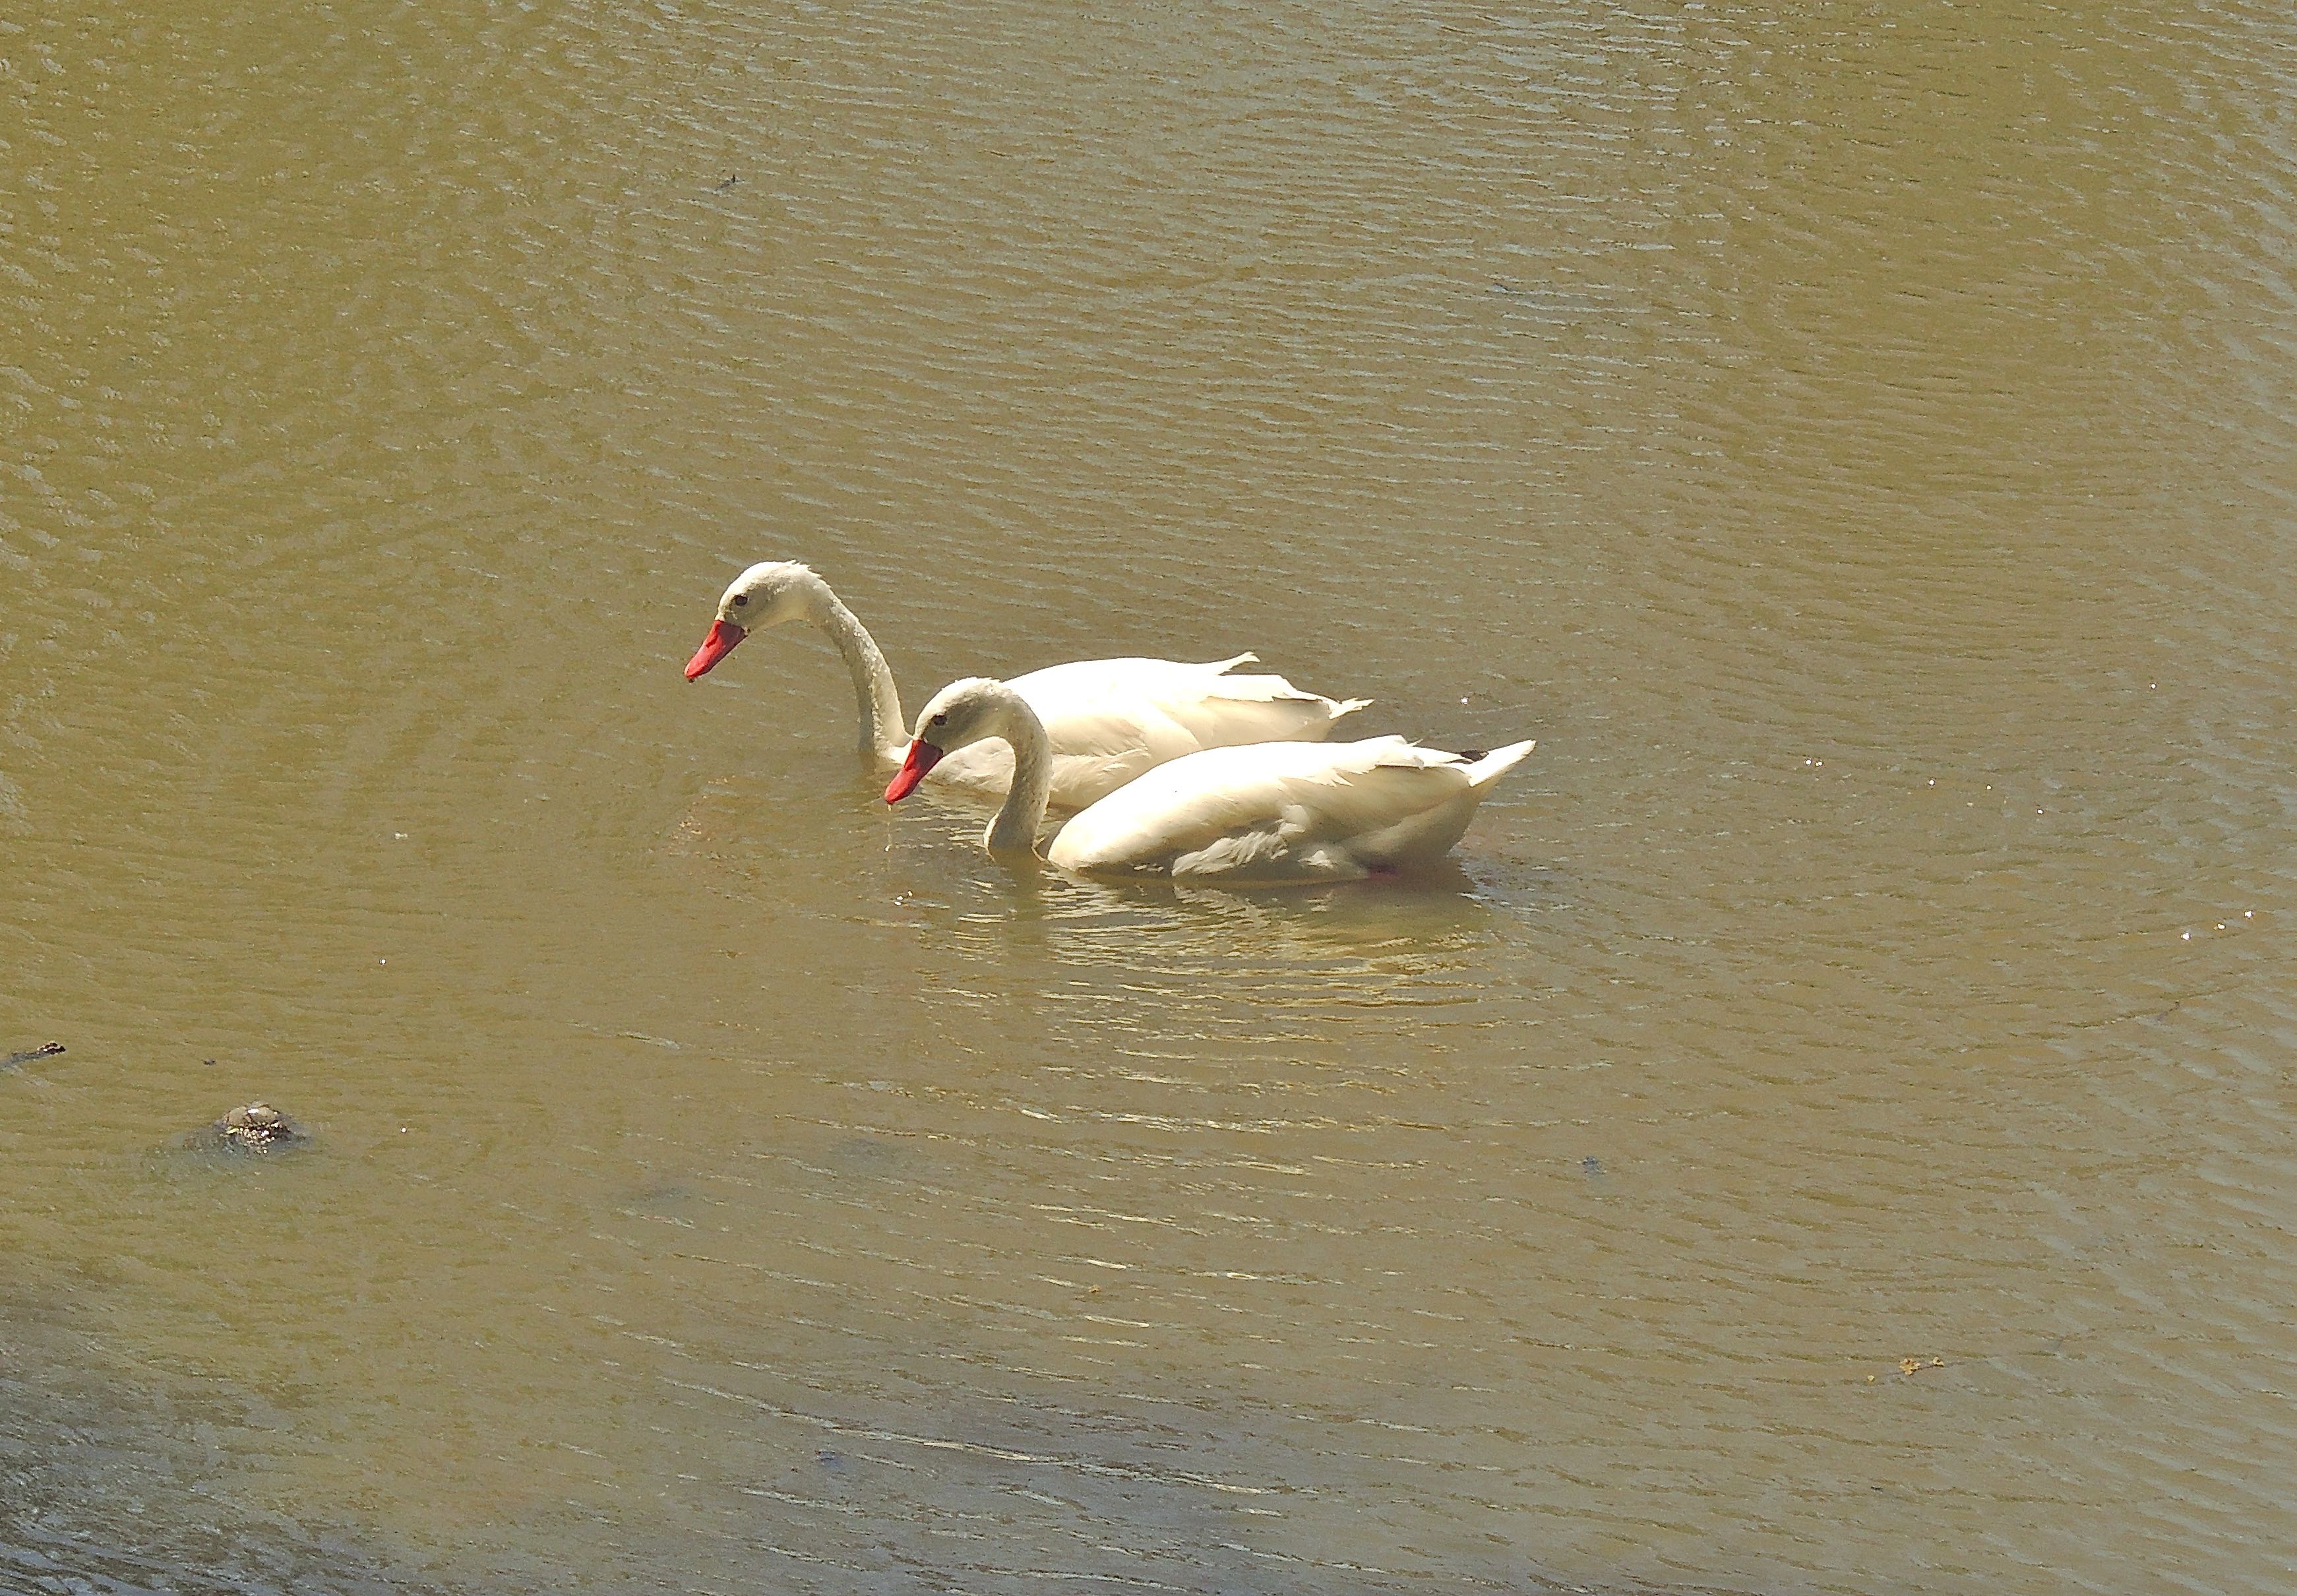 Coscoroba Swans